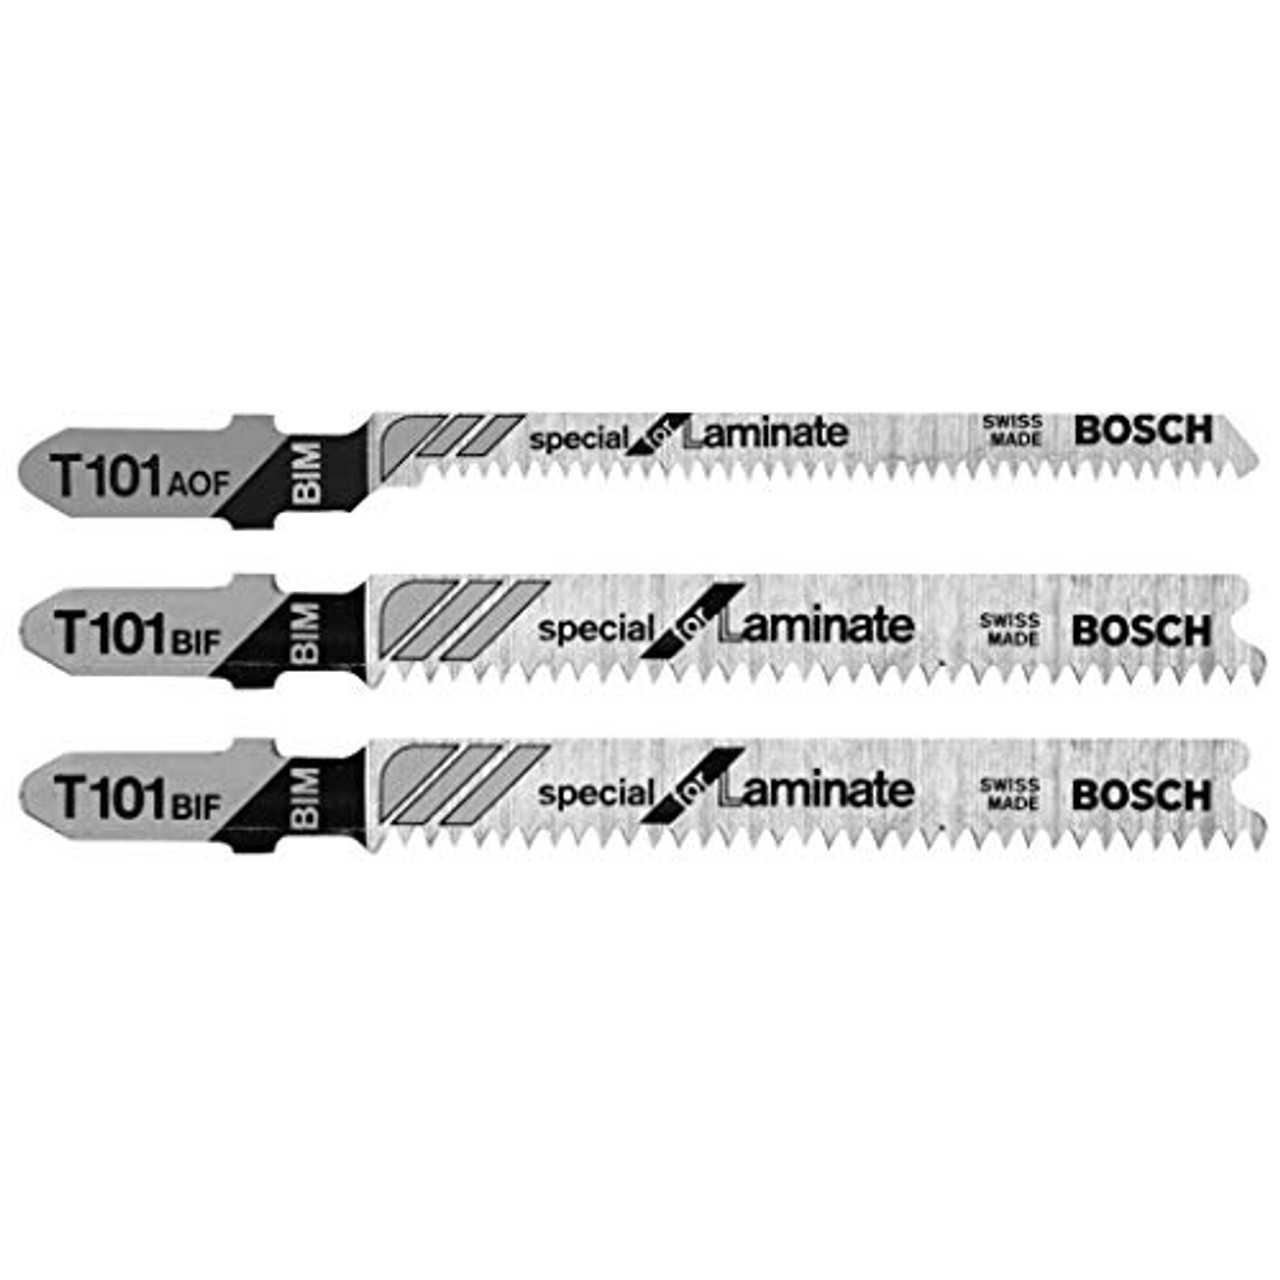 Bosch T503 Hardwood/Laminate T-Shank JigSaw Blade Set, 3-Piece